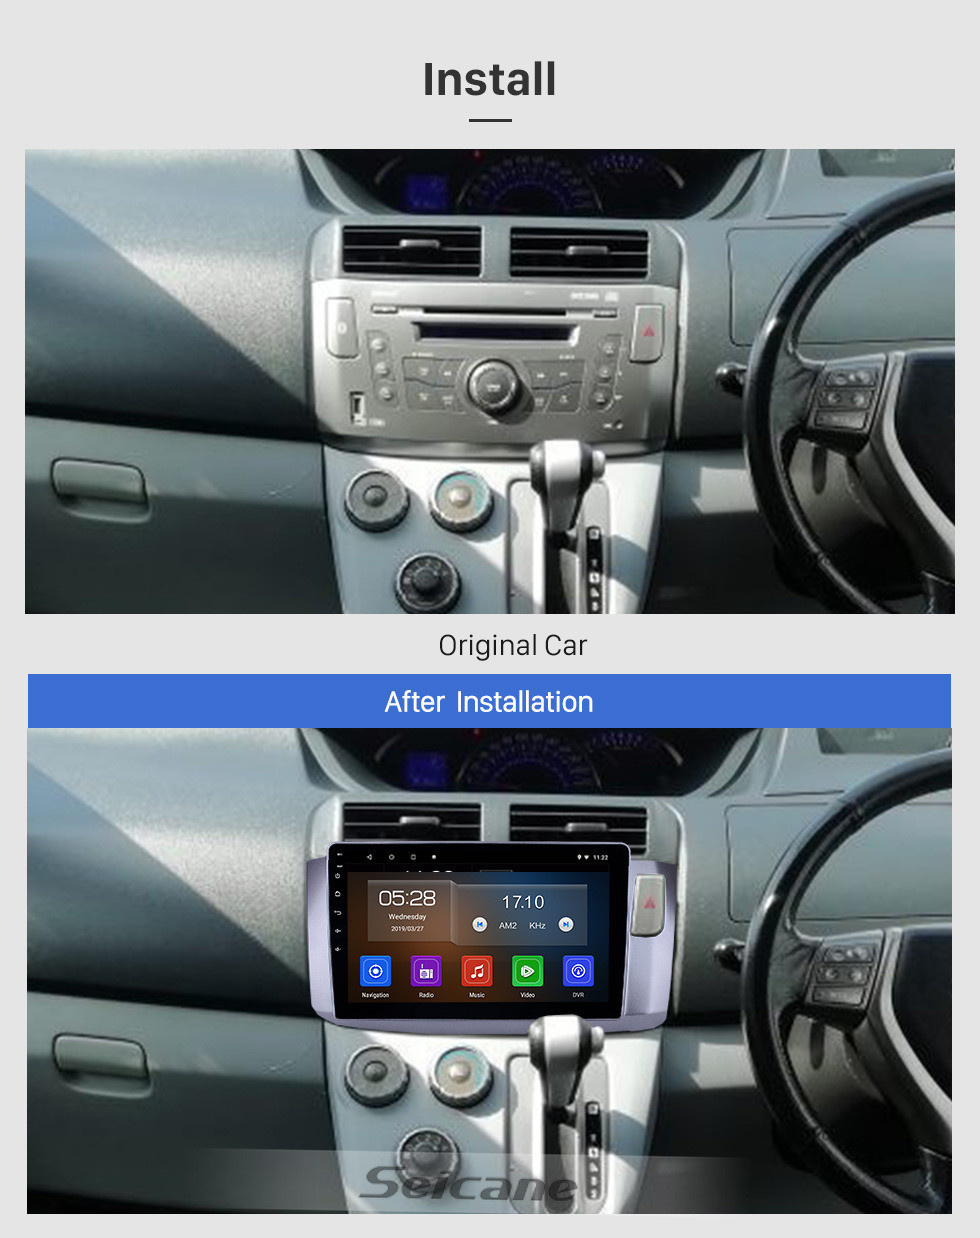 Seicane 10.1 polegada 2010 Perodua Alza Android 11.0 Navegação GPS Rádio Bluetooth HD Touchscreen AUX USB WIFI Carplay suporte OBD2 DAB + 1080 P Vídeo